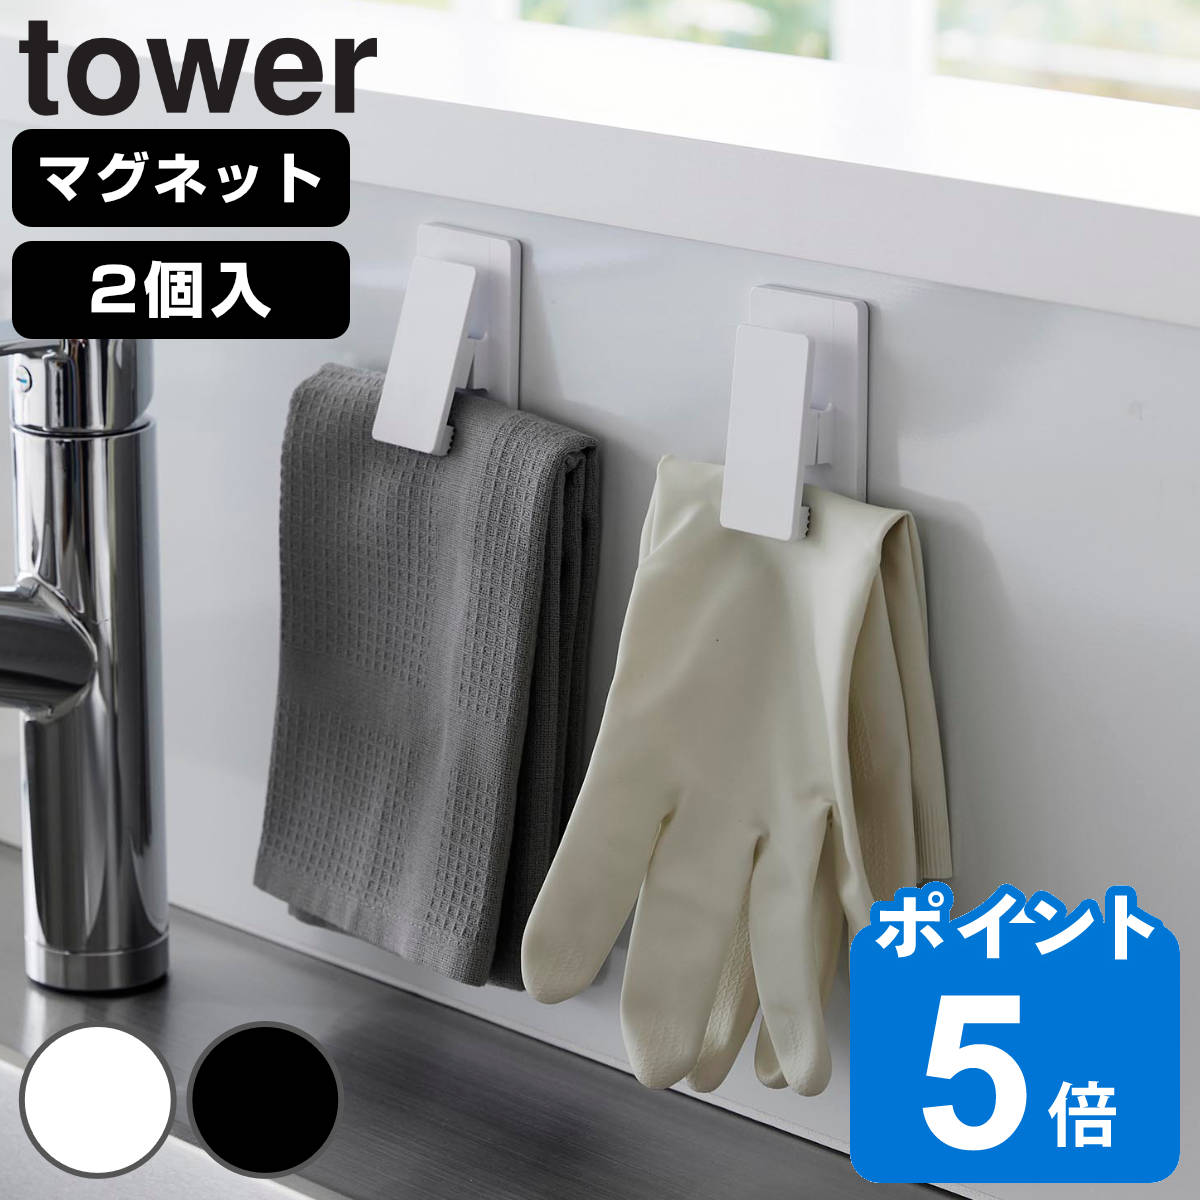 山崎実業 tower マグネットクリップ タワー2個組